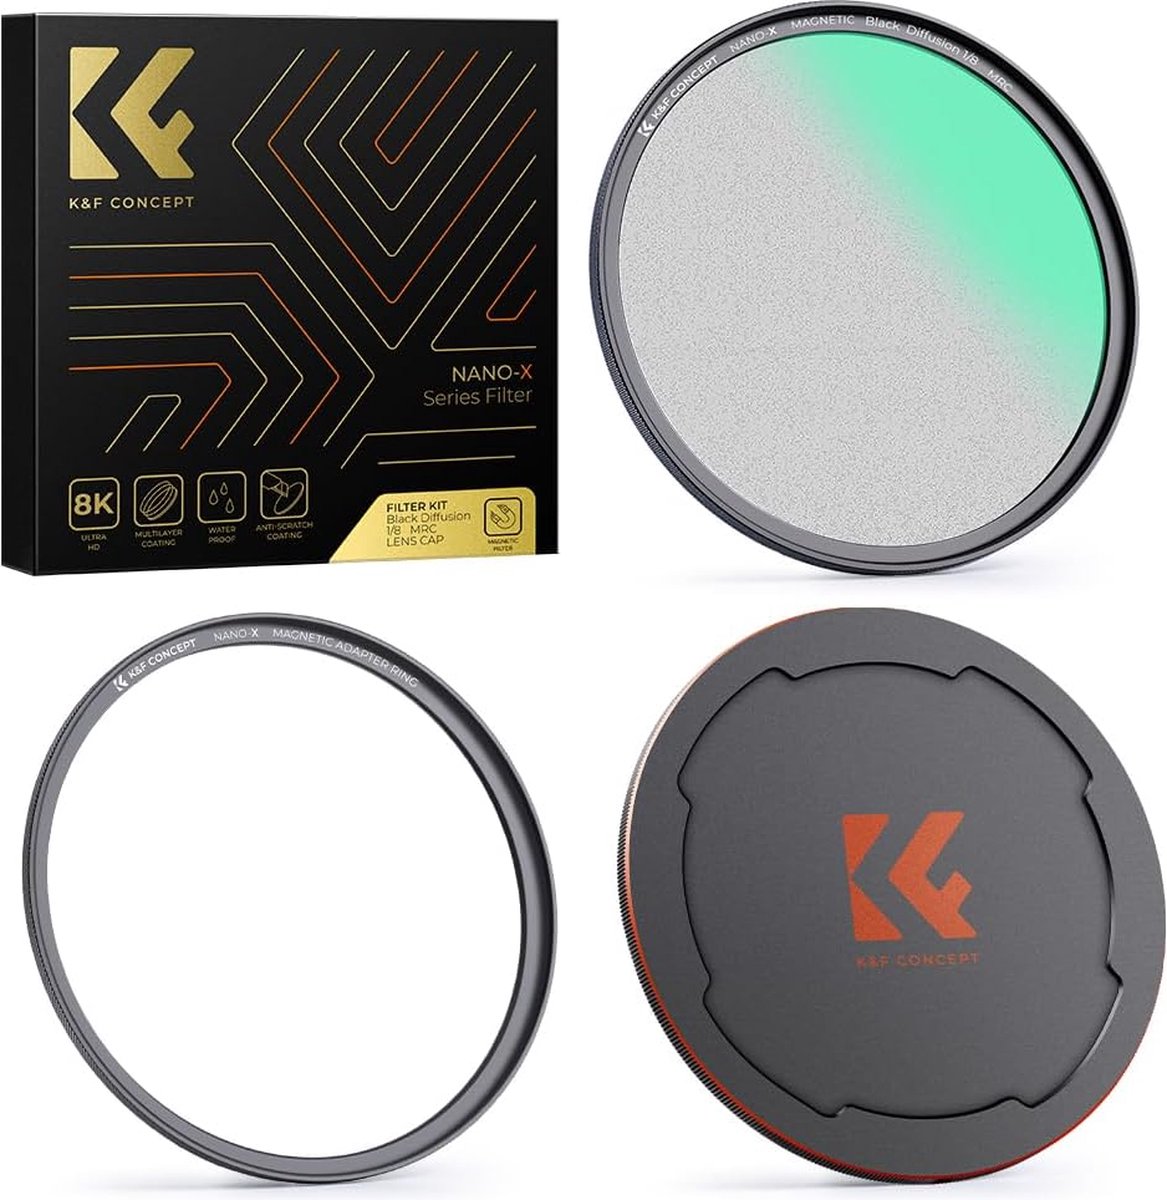 K&F Concept - Artistieke Zwarte Mist Magnetische Diffusie Filter Adapter - 82mm Diameter - Fotografie Accessoire voor Zachte Esthetiek - Magnetisch Bevestigingssysteem - Creatieve Fotografie Effecten